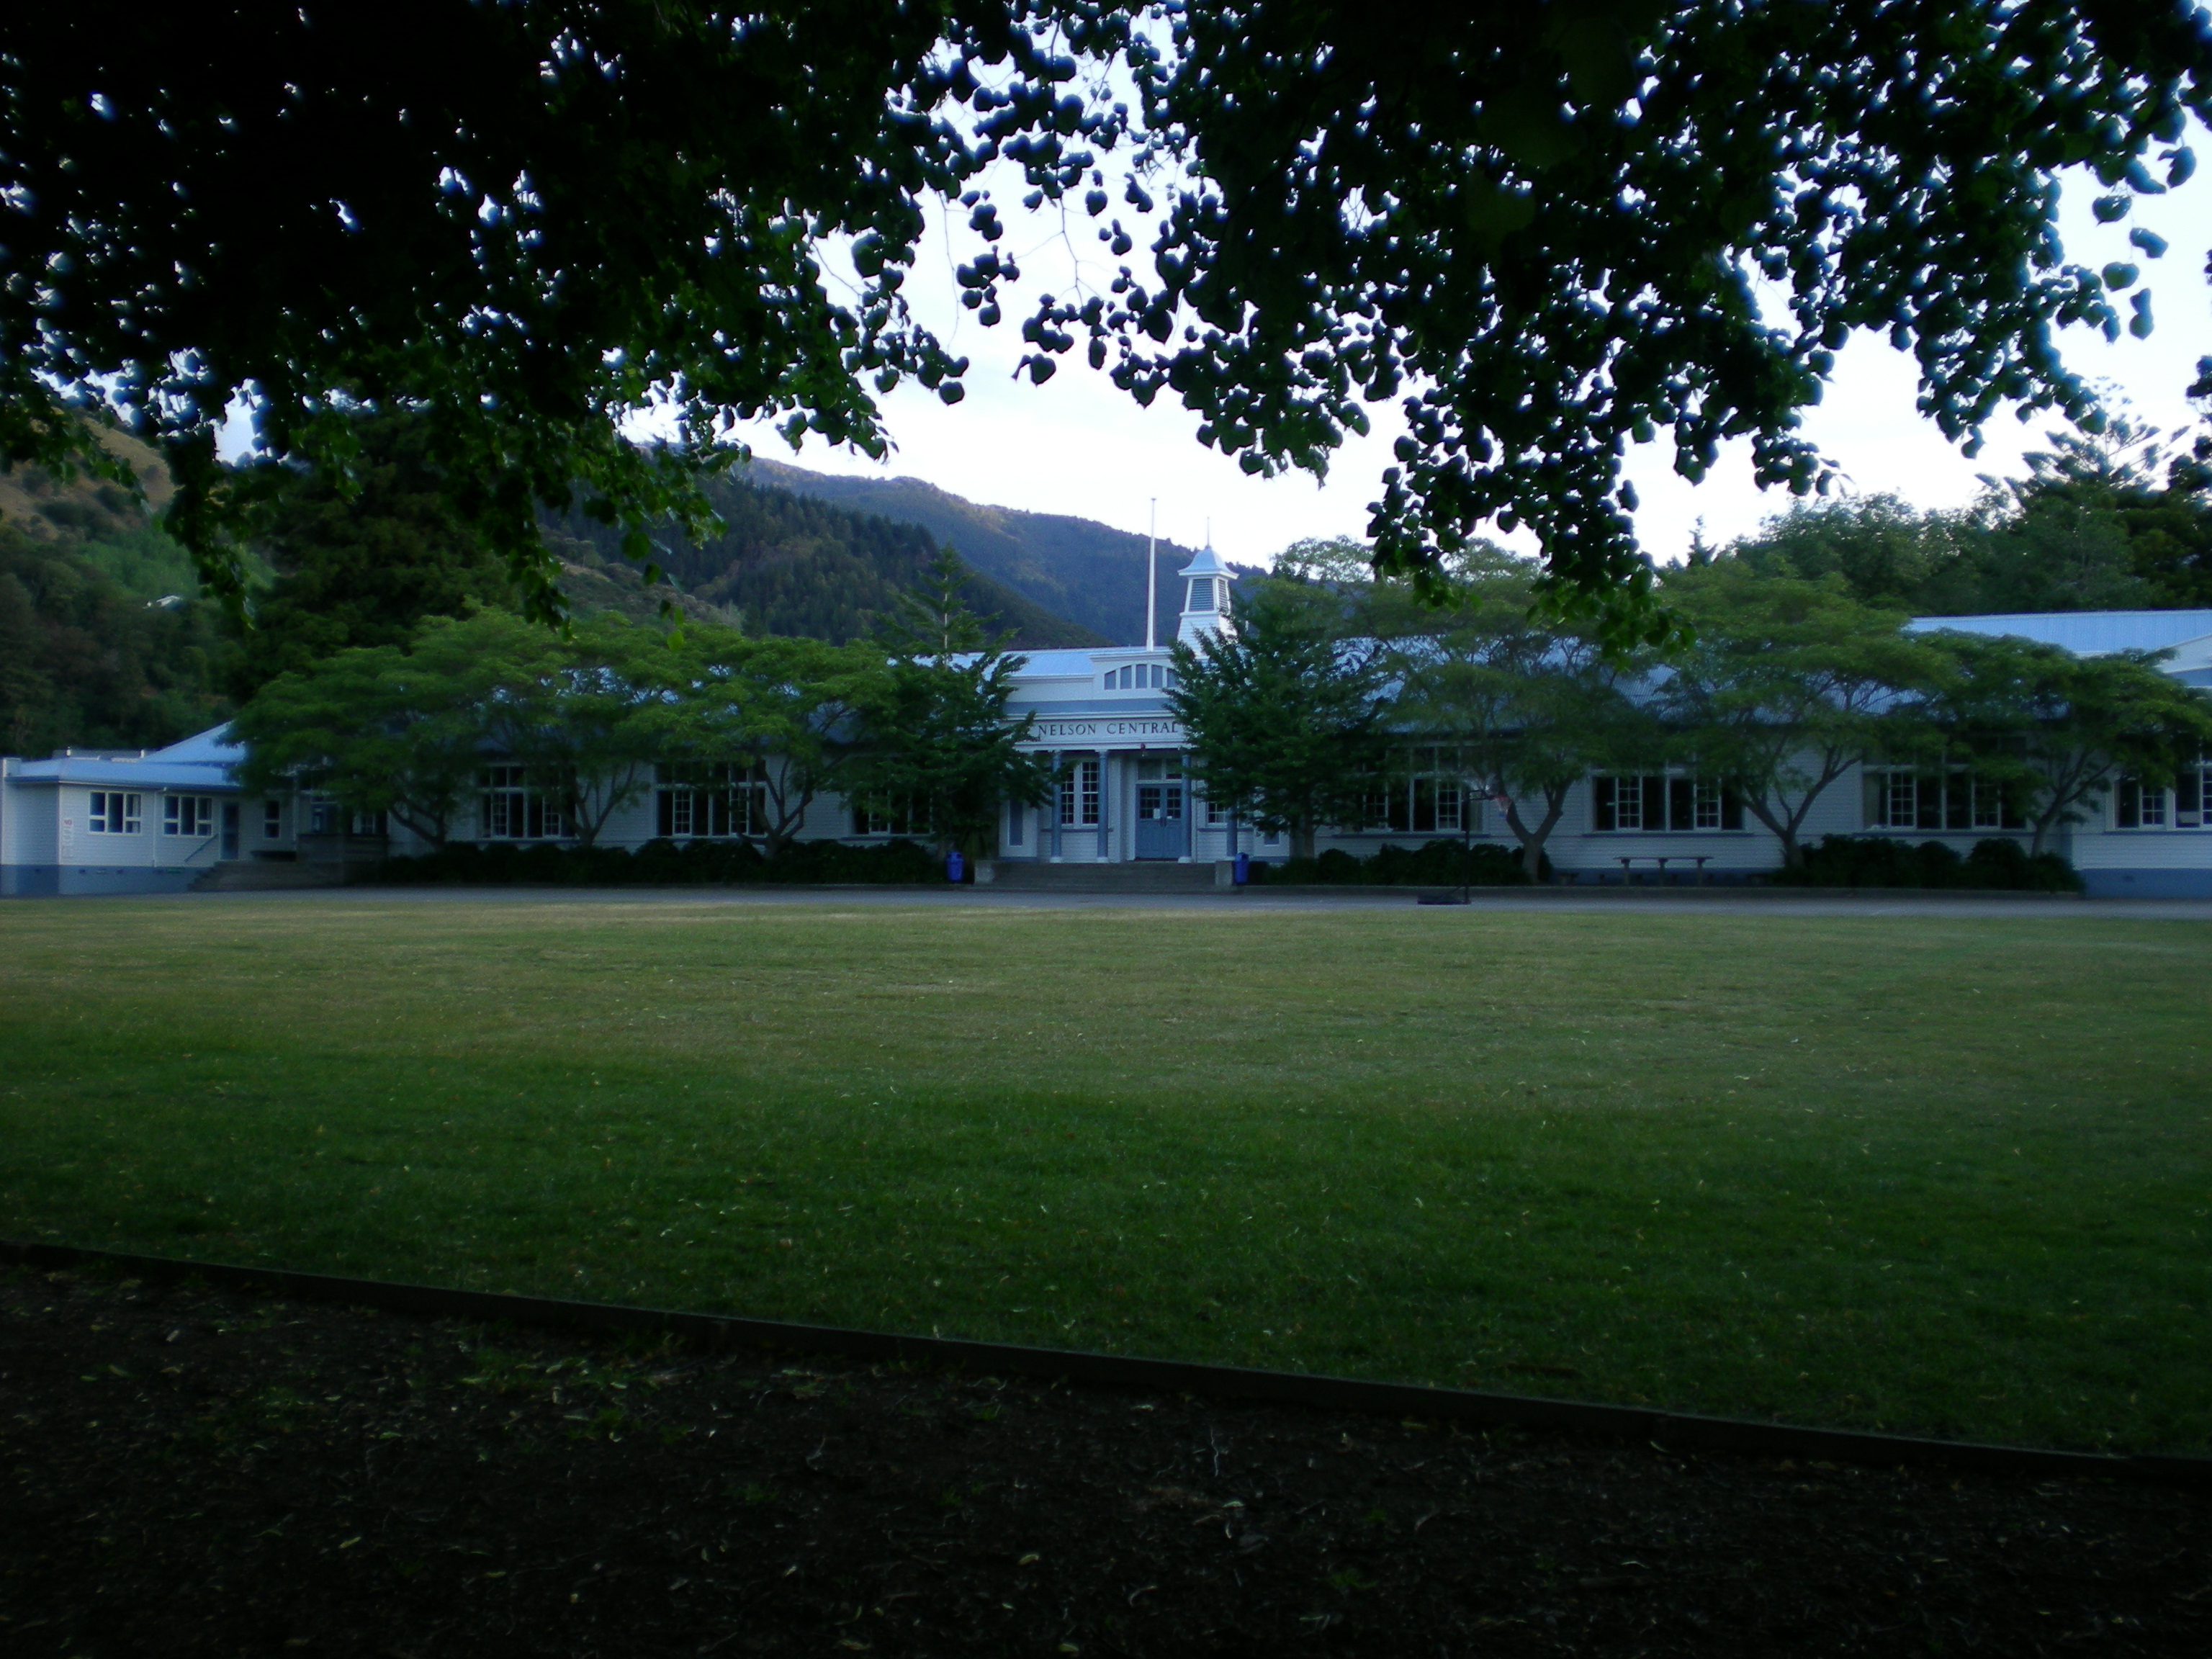 Island school. Колледж Нельсона. Колледж в Нельсоне новая Зеландия 19 век. Школы в новой Зеландии. Nelson Mandela School.